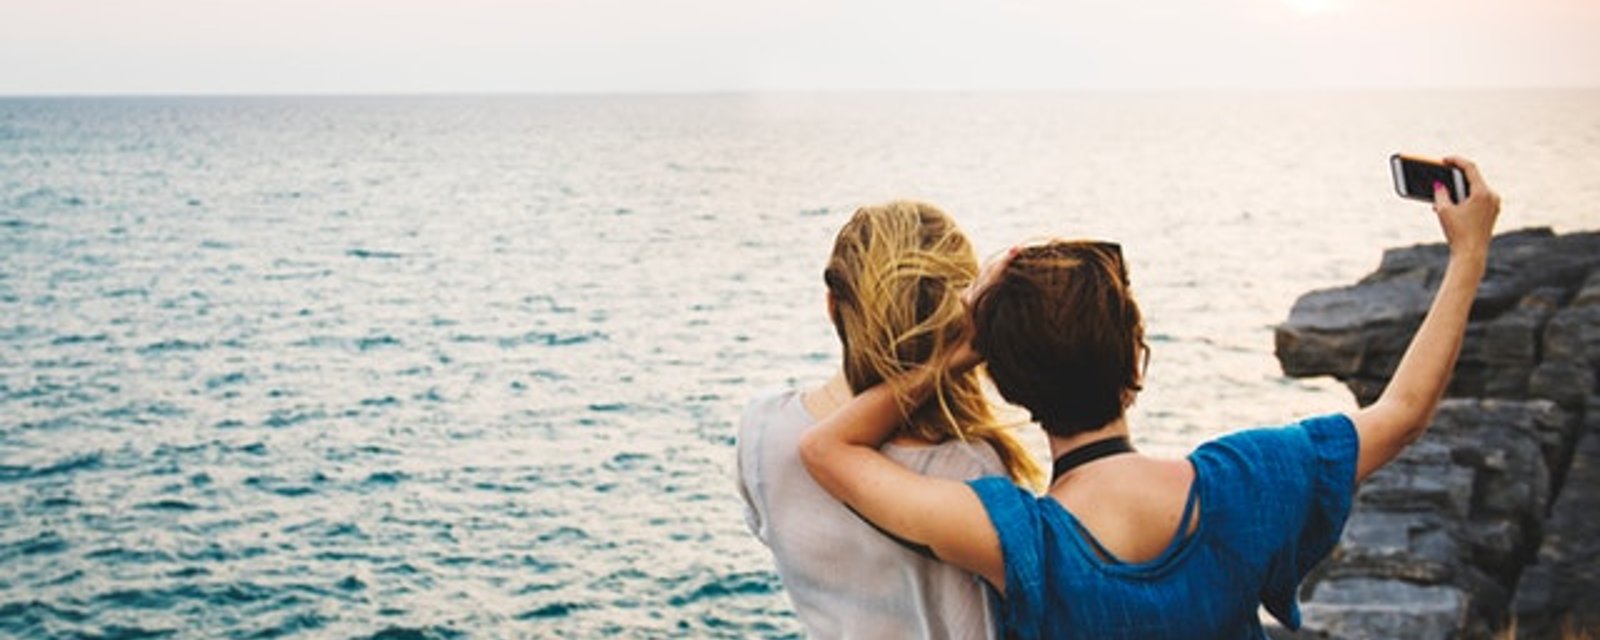 5 raisons pour lesquelles voyager avec une amie est bon pour votre santé... et votre moral!